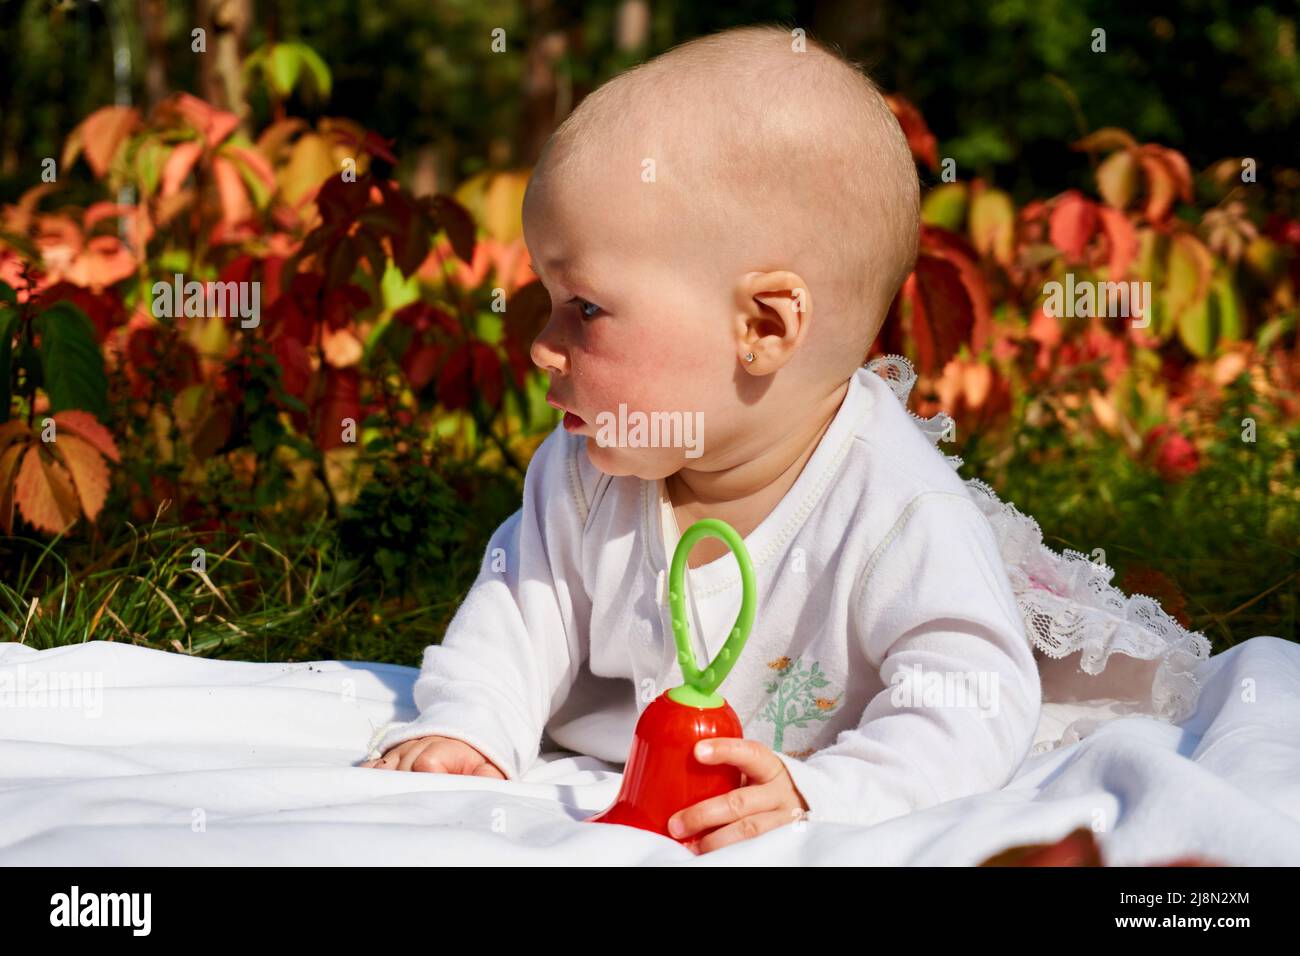 Ein kleines wunderbares Baby kriecht an einem warmen Sommertag im Park auf einer Decke Stockfoto